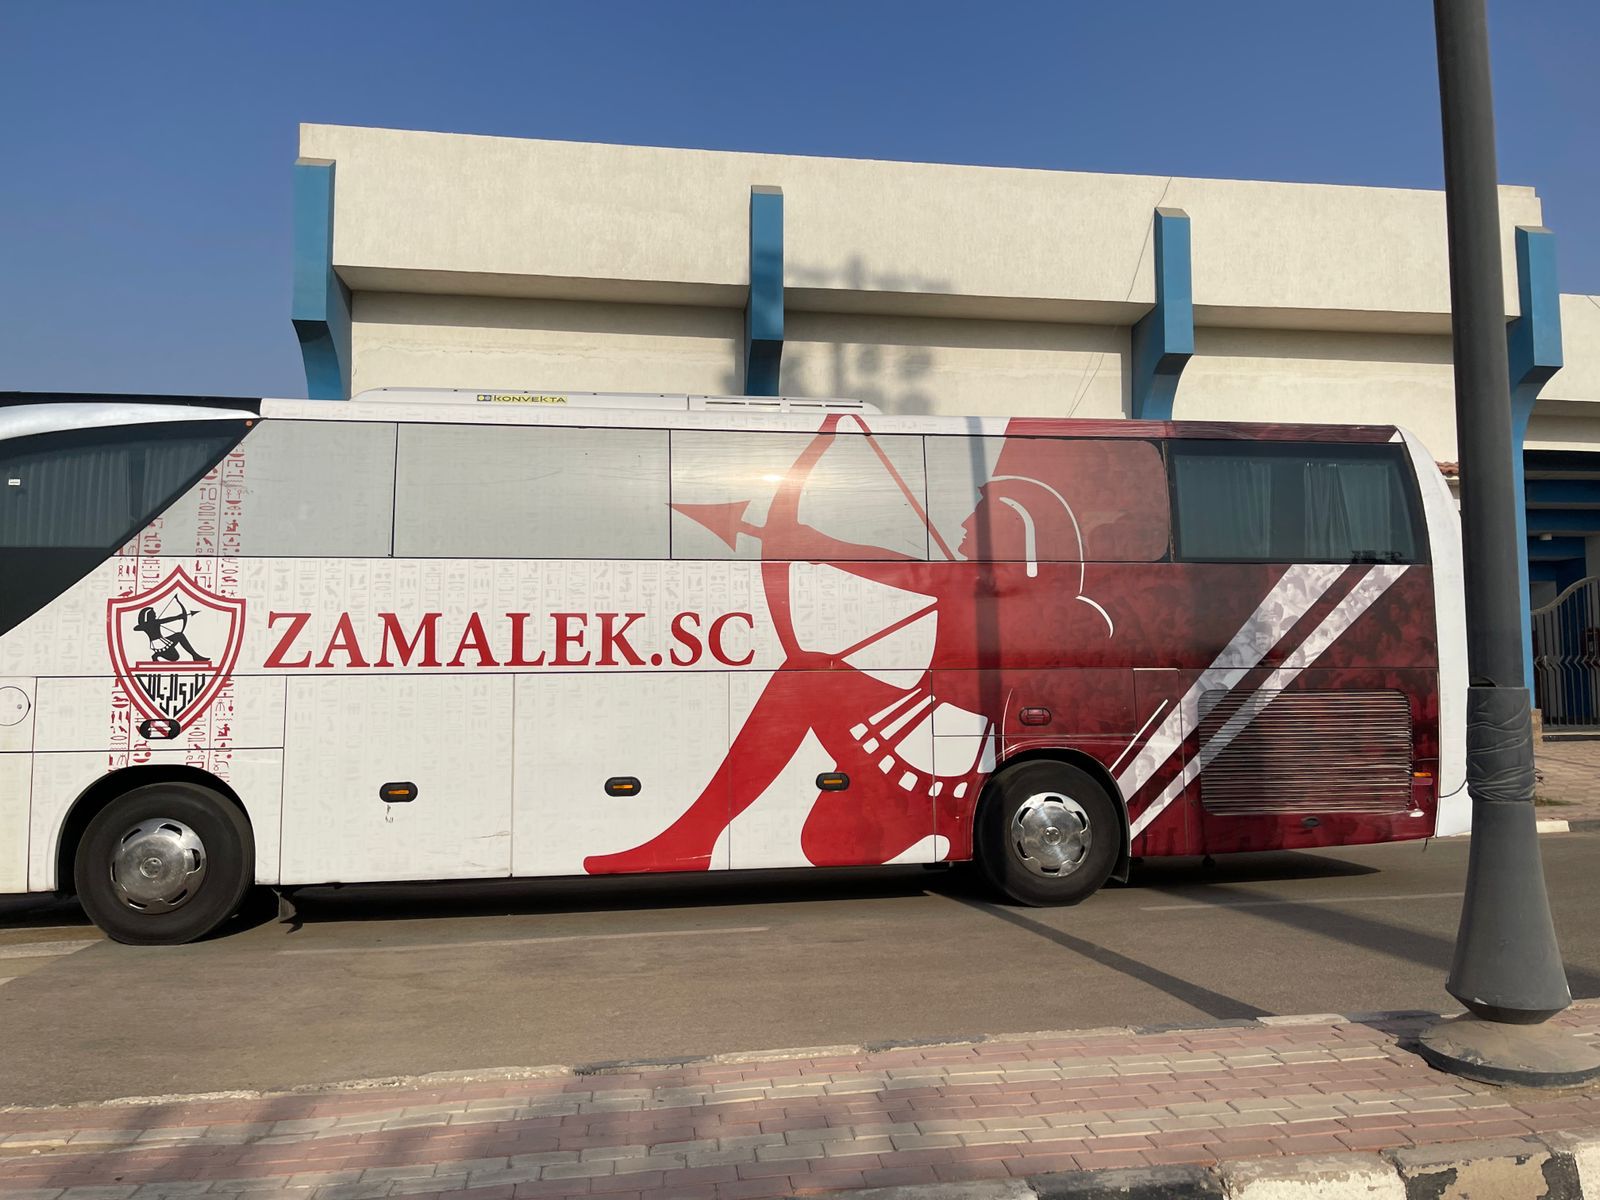 حافلة الزمالك تصل مطار القاهرة استعدادًا للسفر لكينيا